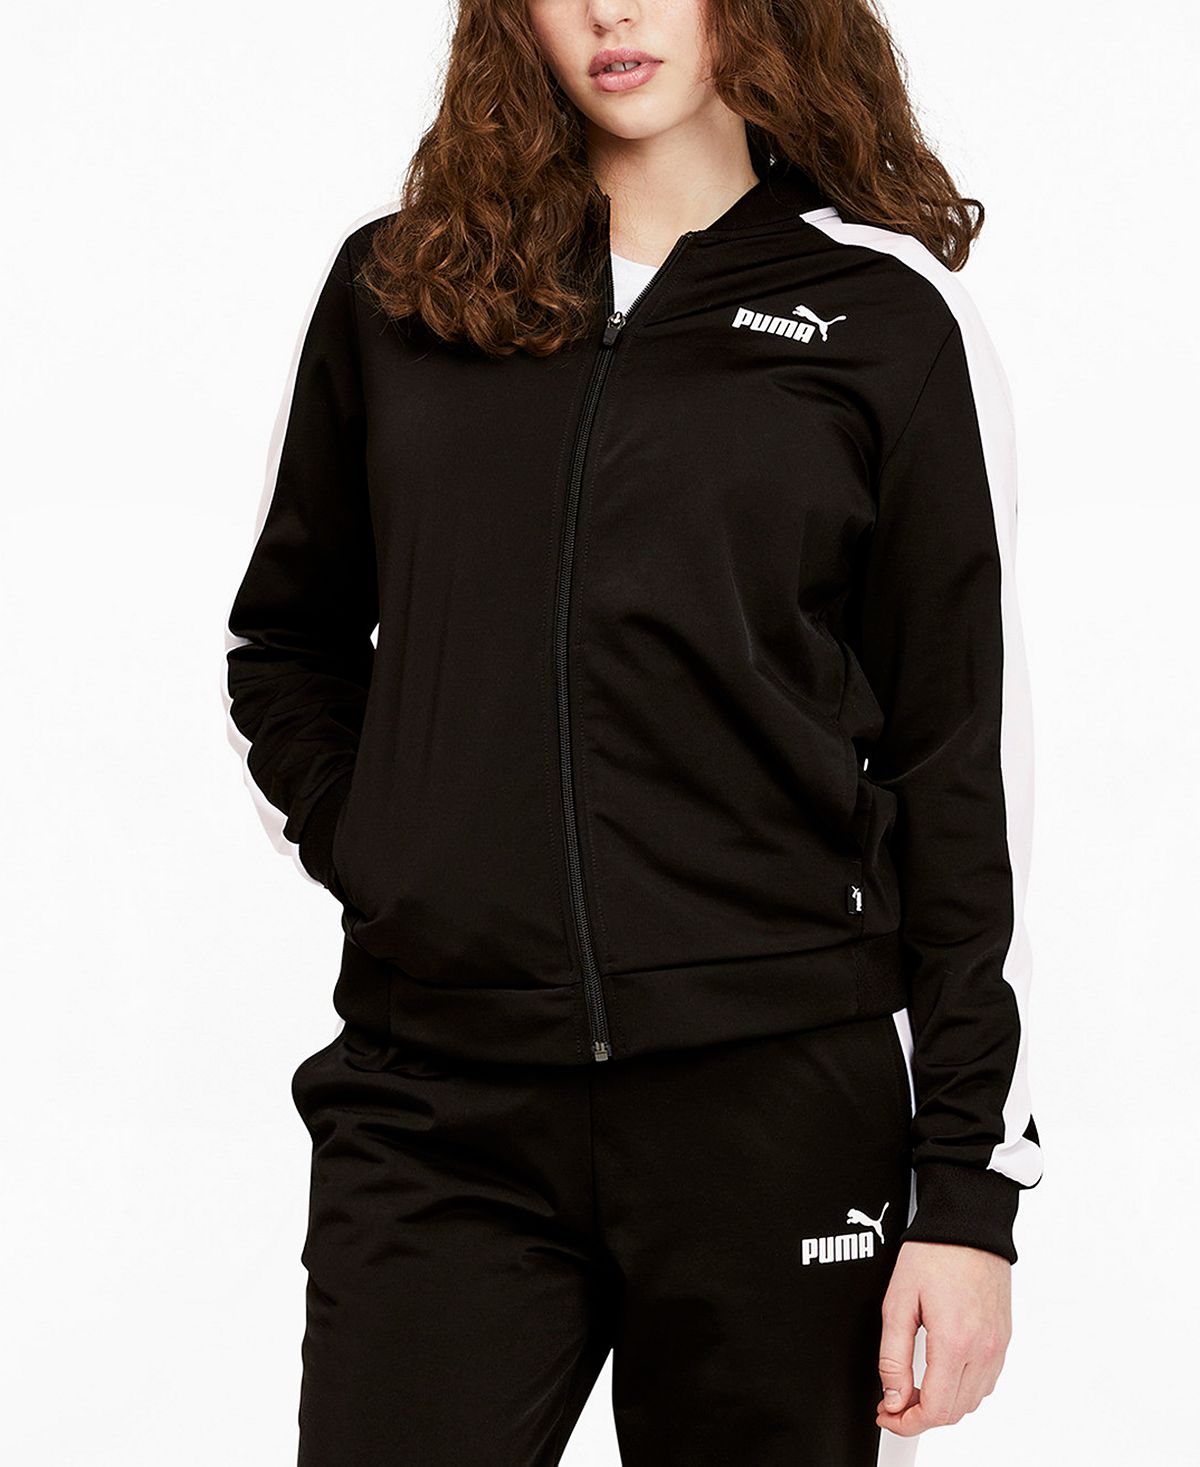 Женская спортивная куртка iconic t7 Puma, черный